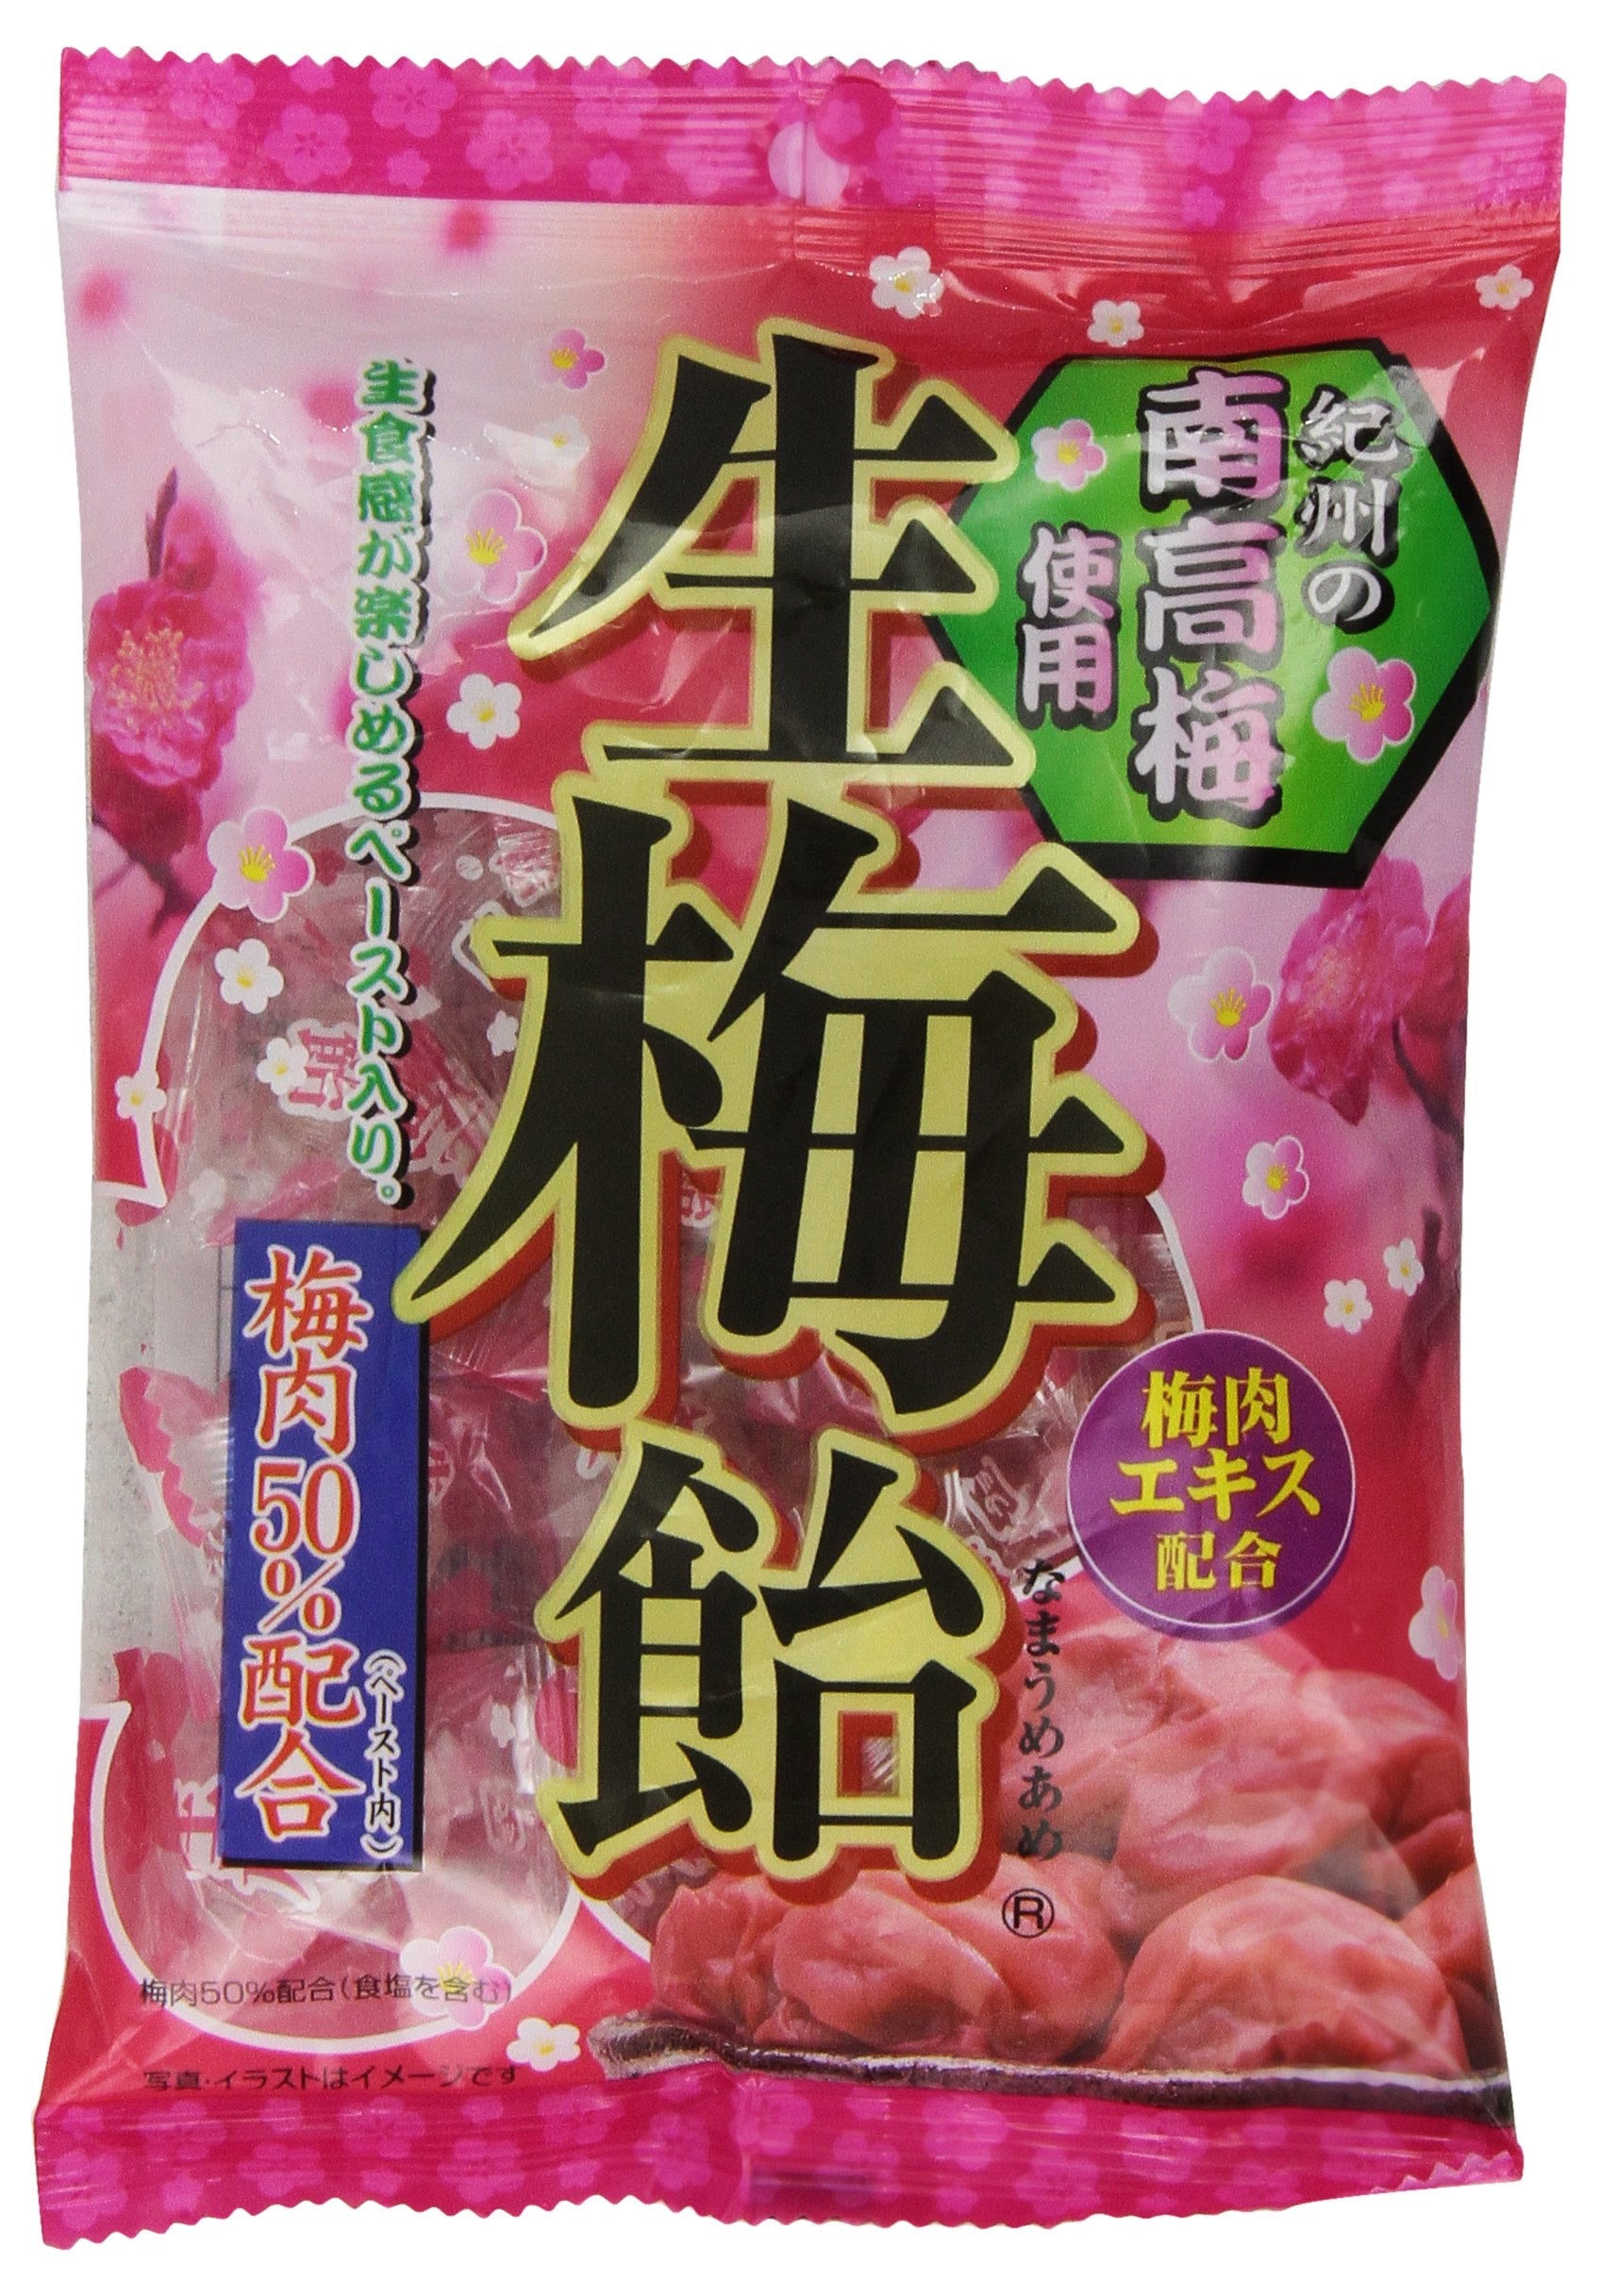 Ribon Nm Ume caramelo de ciruela japonés duro - 2.2 oz